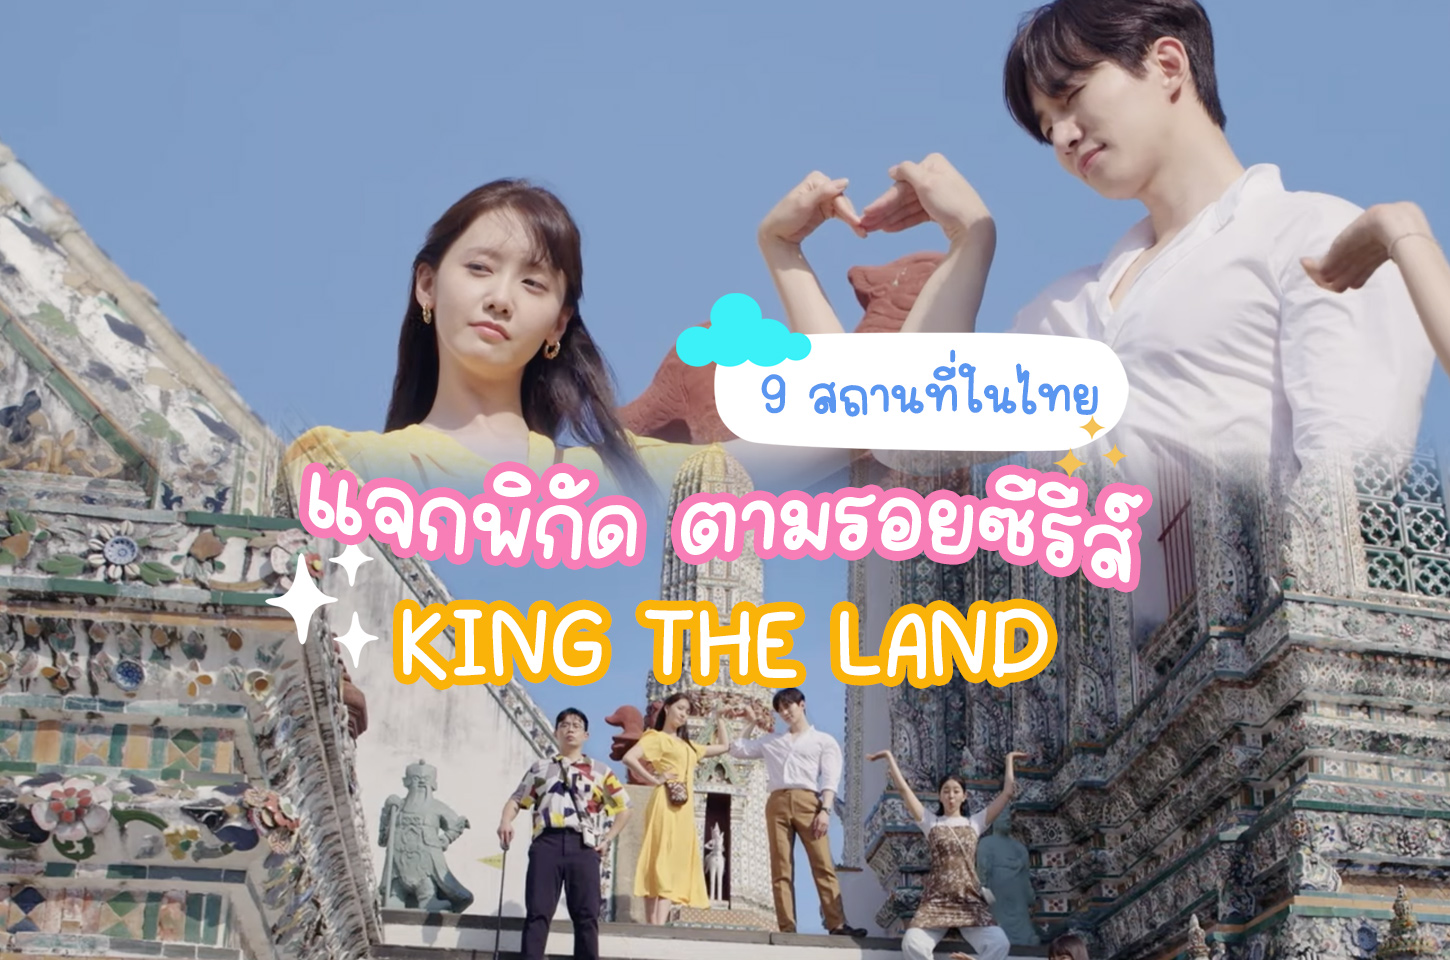 แจกพิกัด 9 สถานที่ ตามรอยซีรีส์ “King The Land” มาเที่ยวไทย